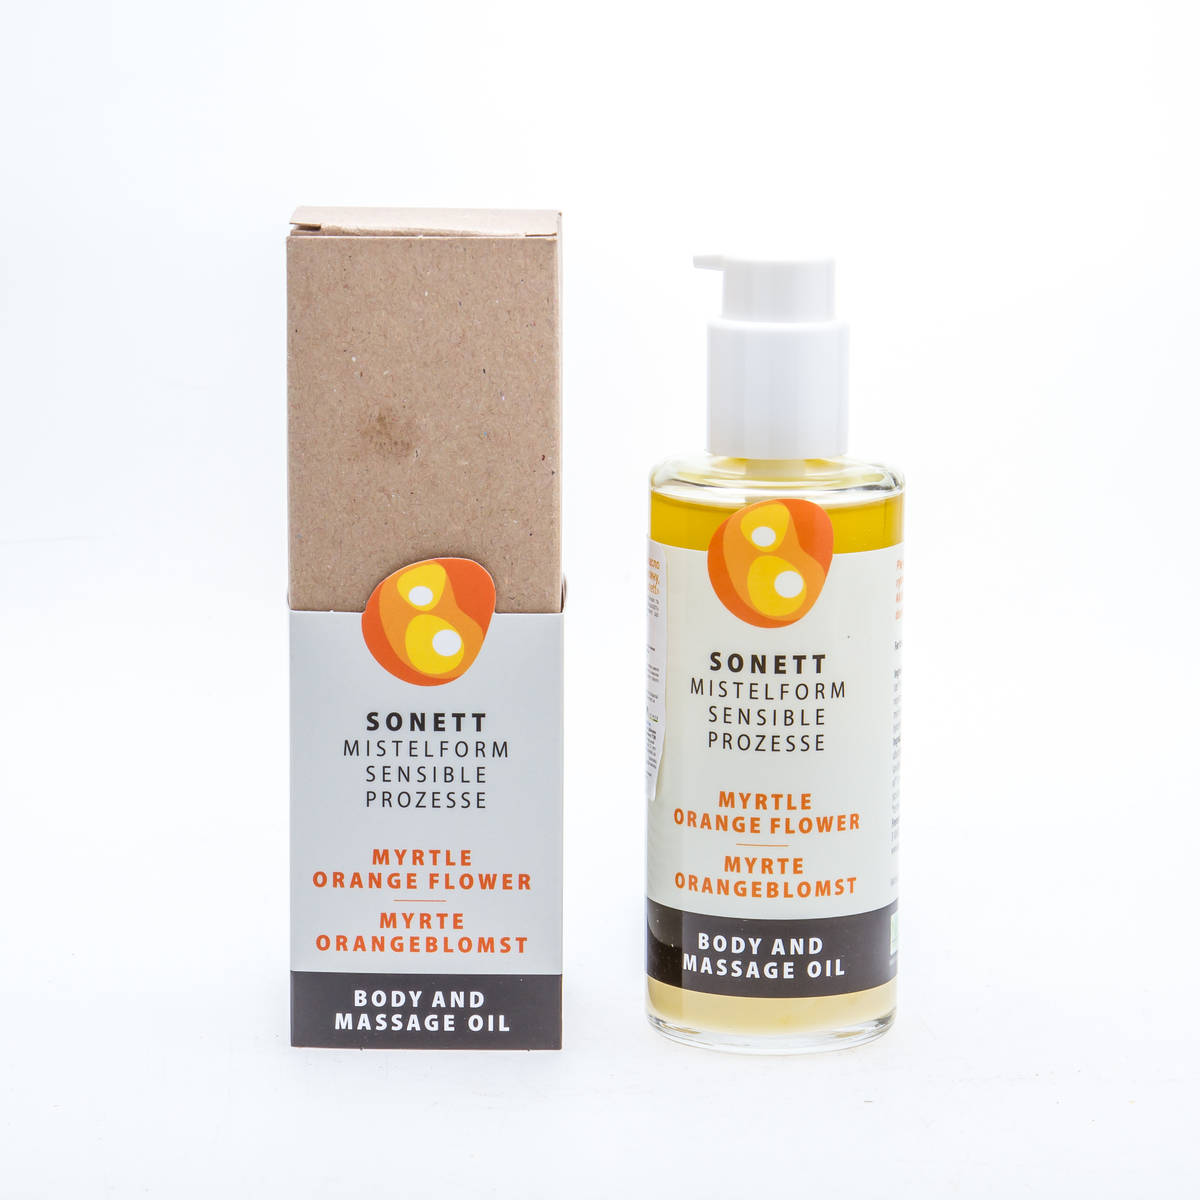 Sonett Органічна масажна олія Мирт та цвіт апельсину, 145 мл - купить в интернет-магазине Юнимед